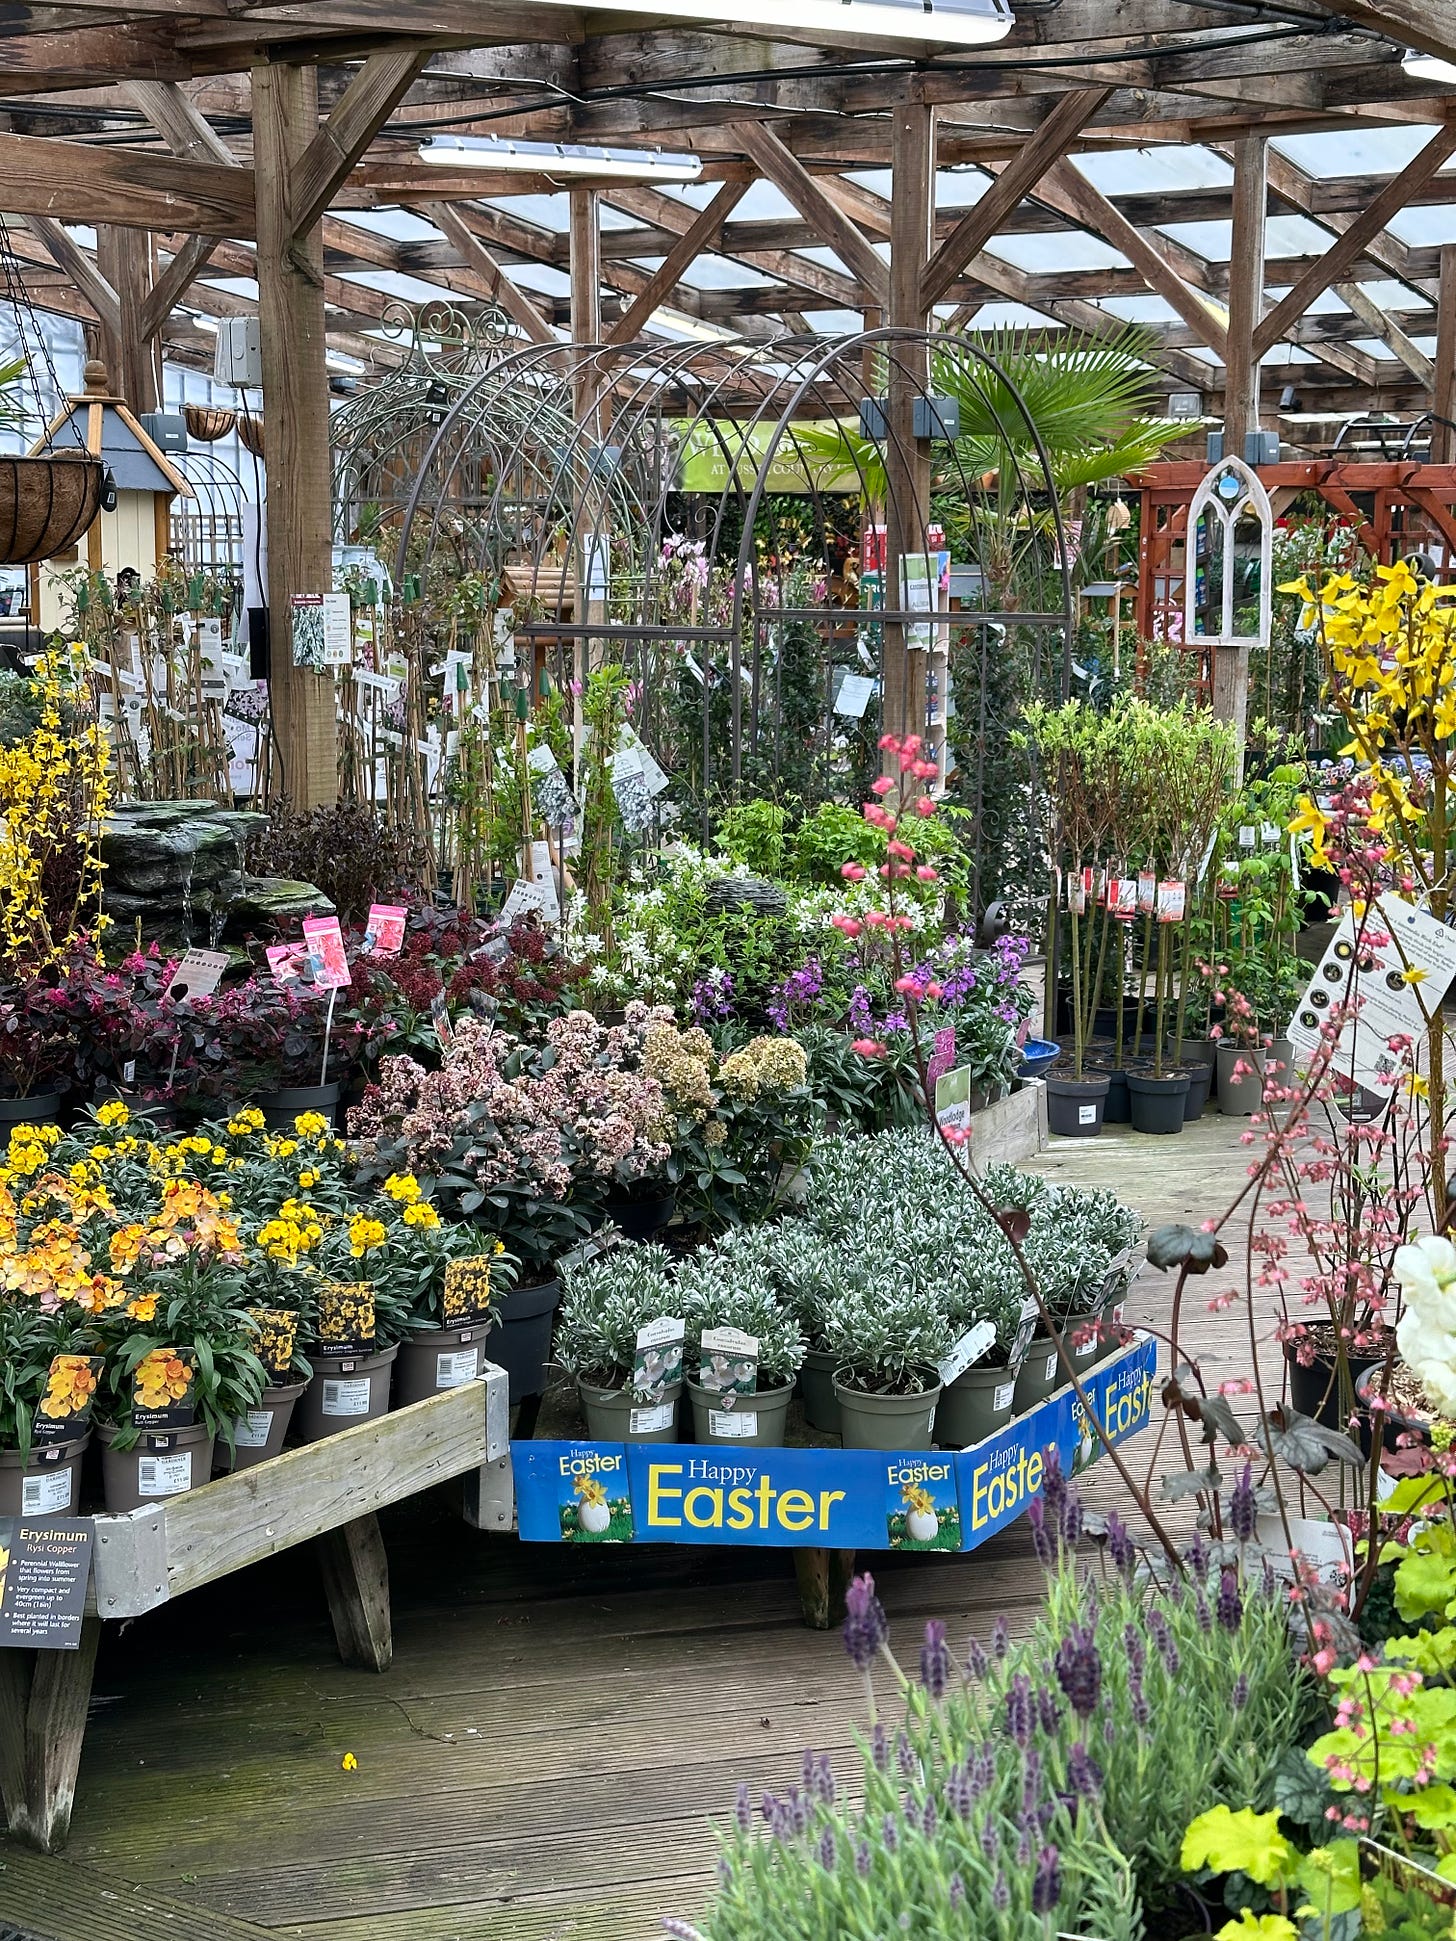 shelves of plants in a garden centre